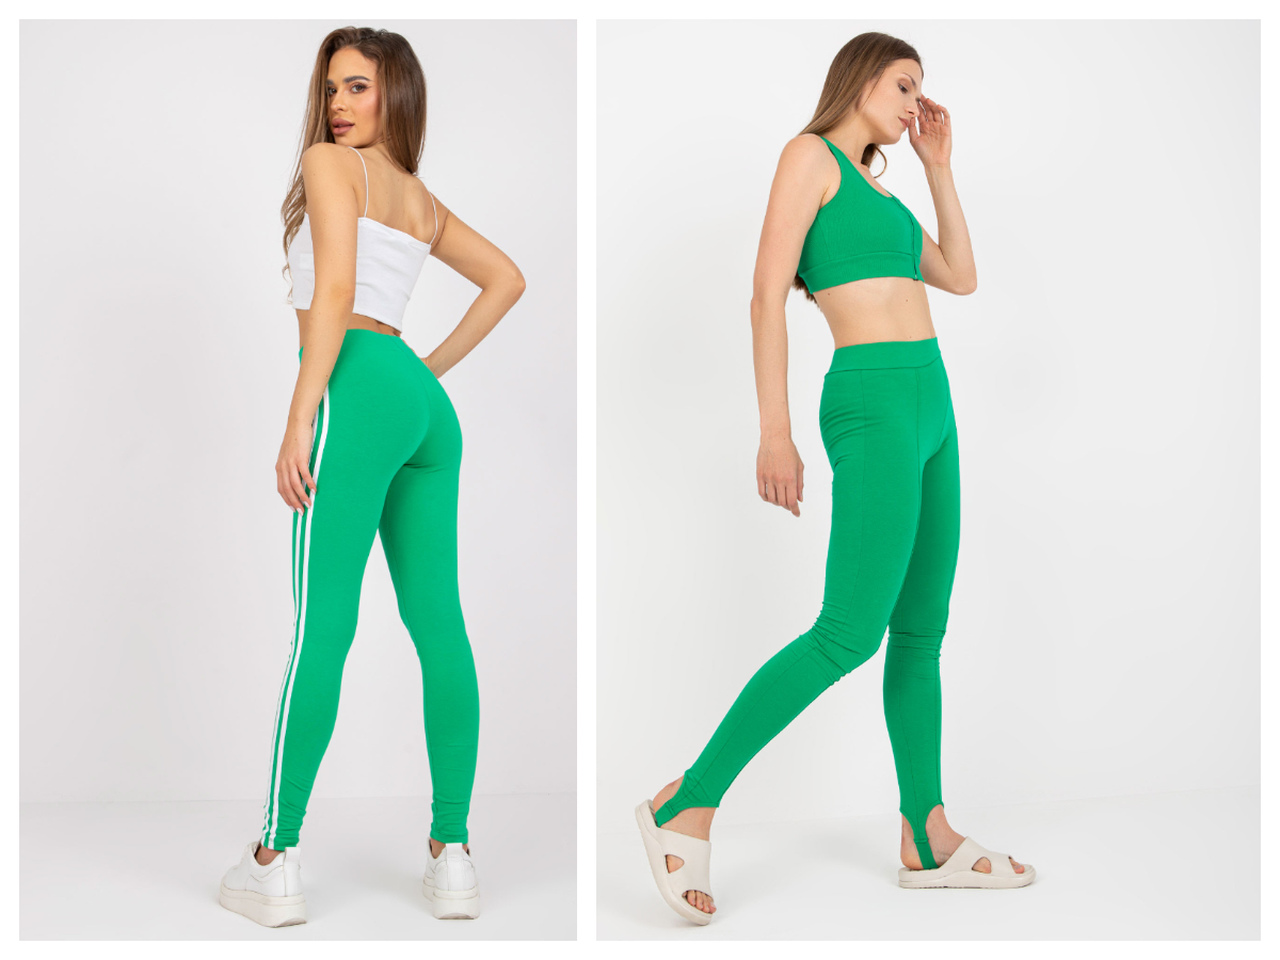 Zielone legginsy damskie - modny wybór dla klientów Twojego sklepu